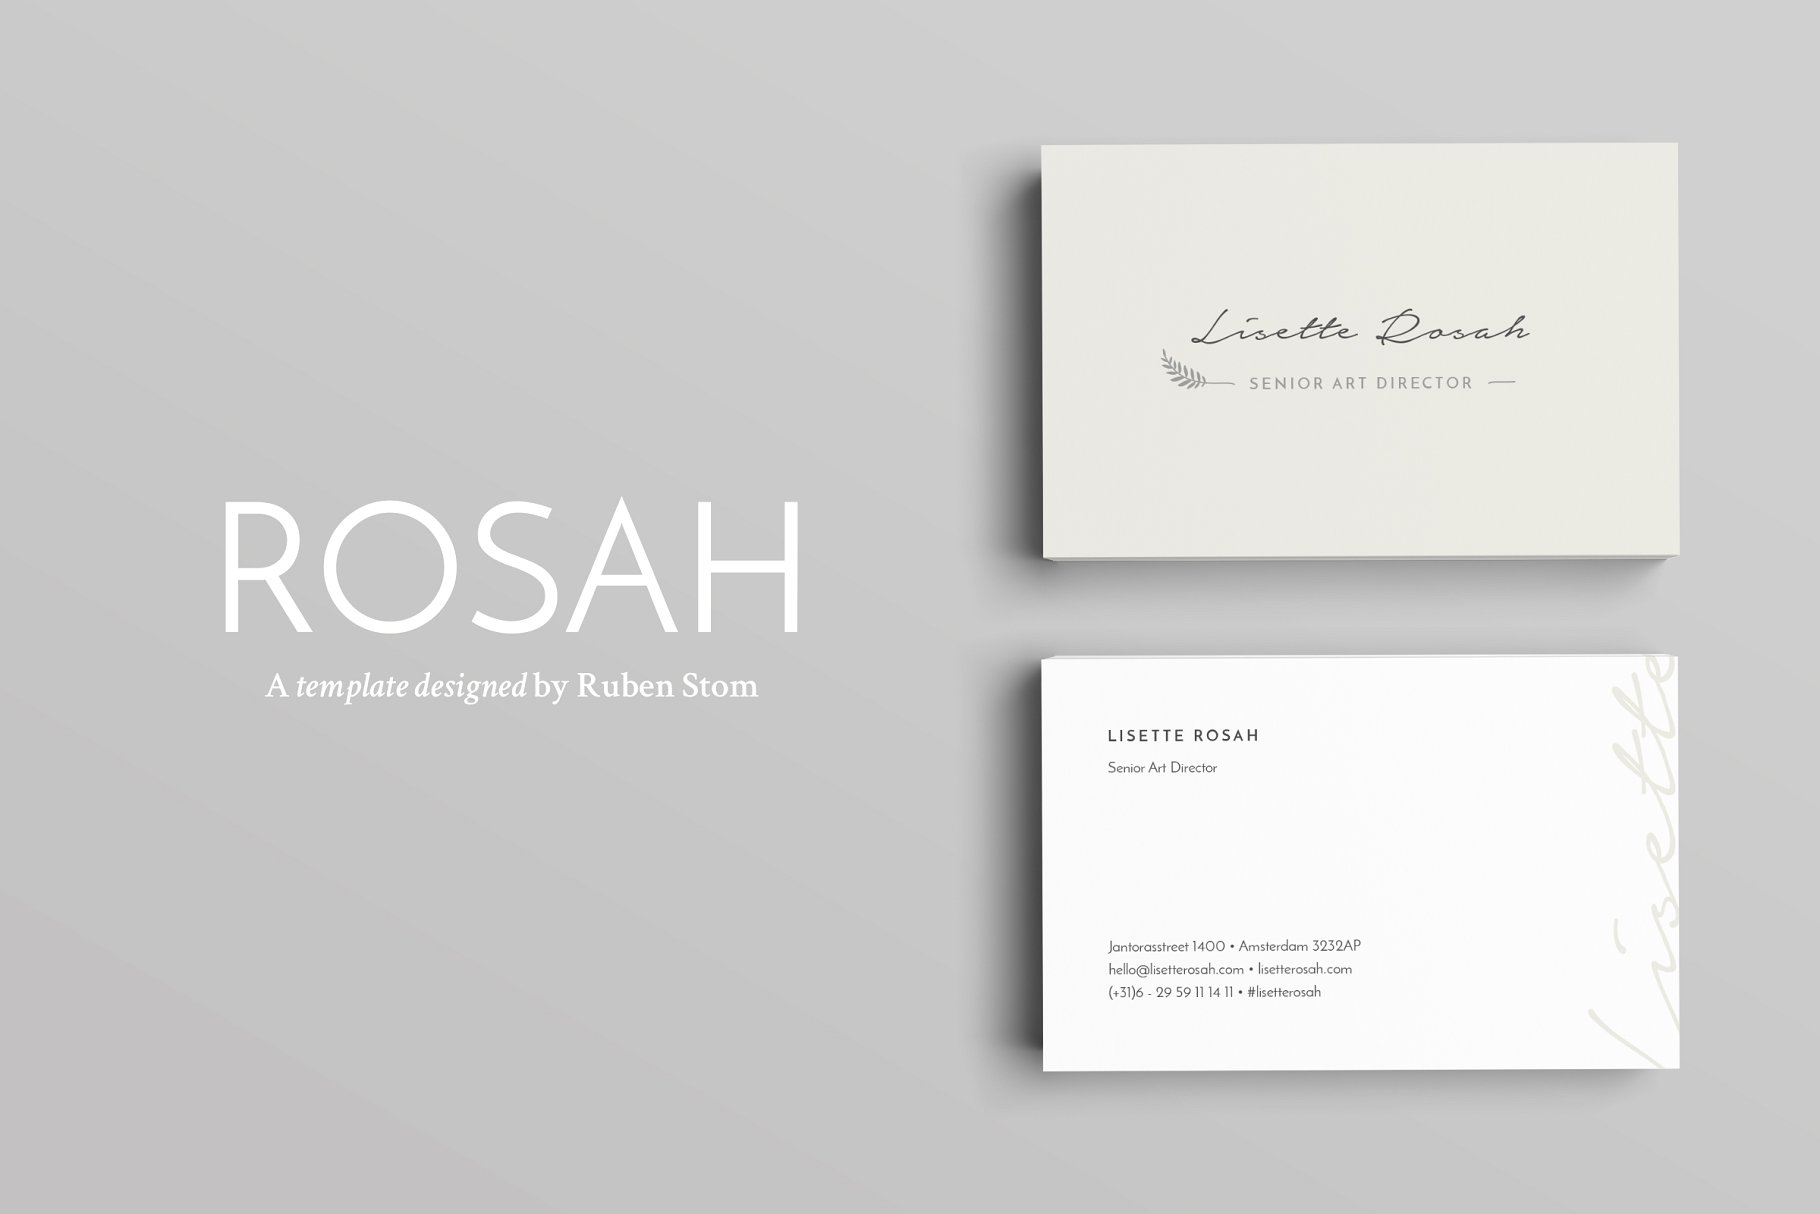 极简主义企业名片设计模板 Rosah Business Card Template插图